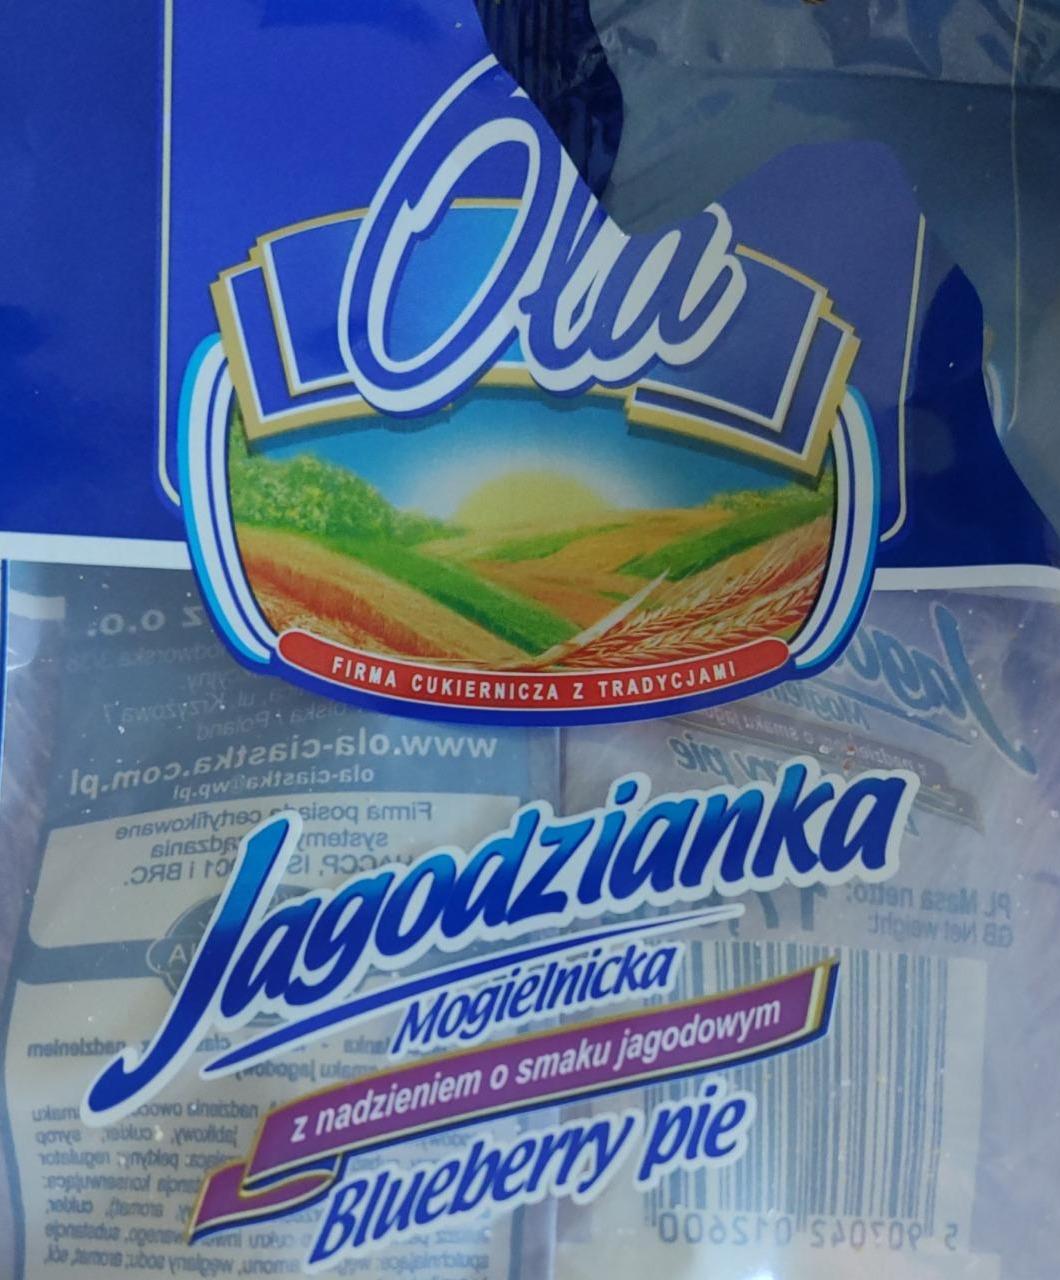 Фото - Jagodzianka Mogielnicka z nadzieniem o smaku jagodowym OLA